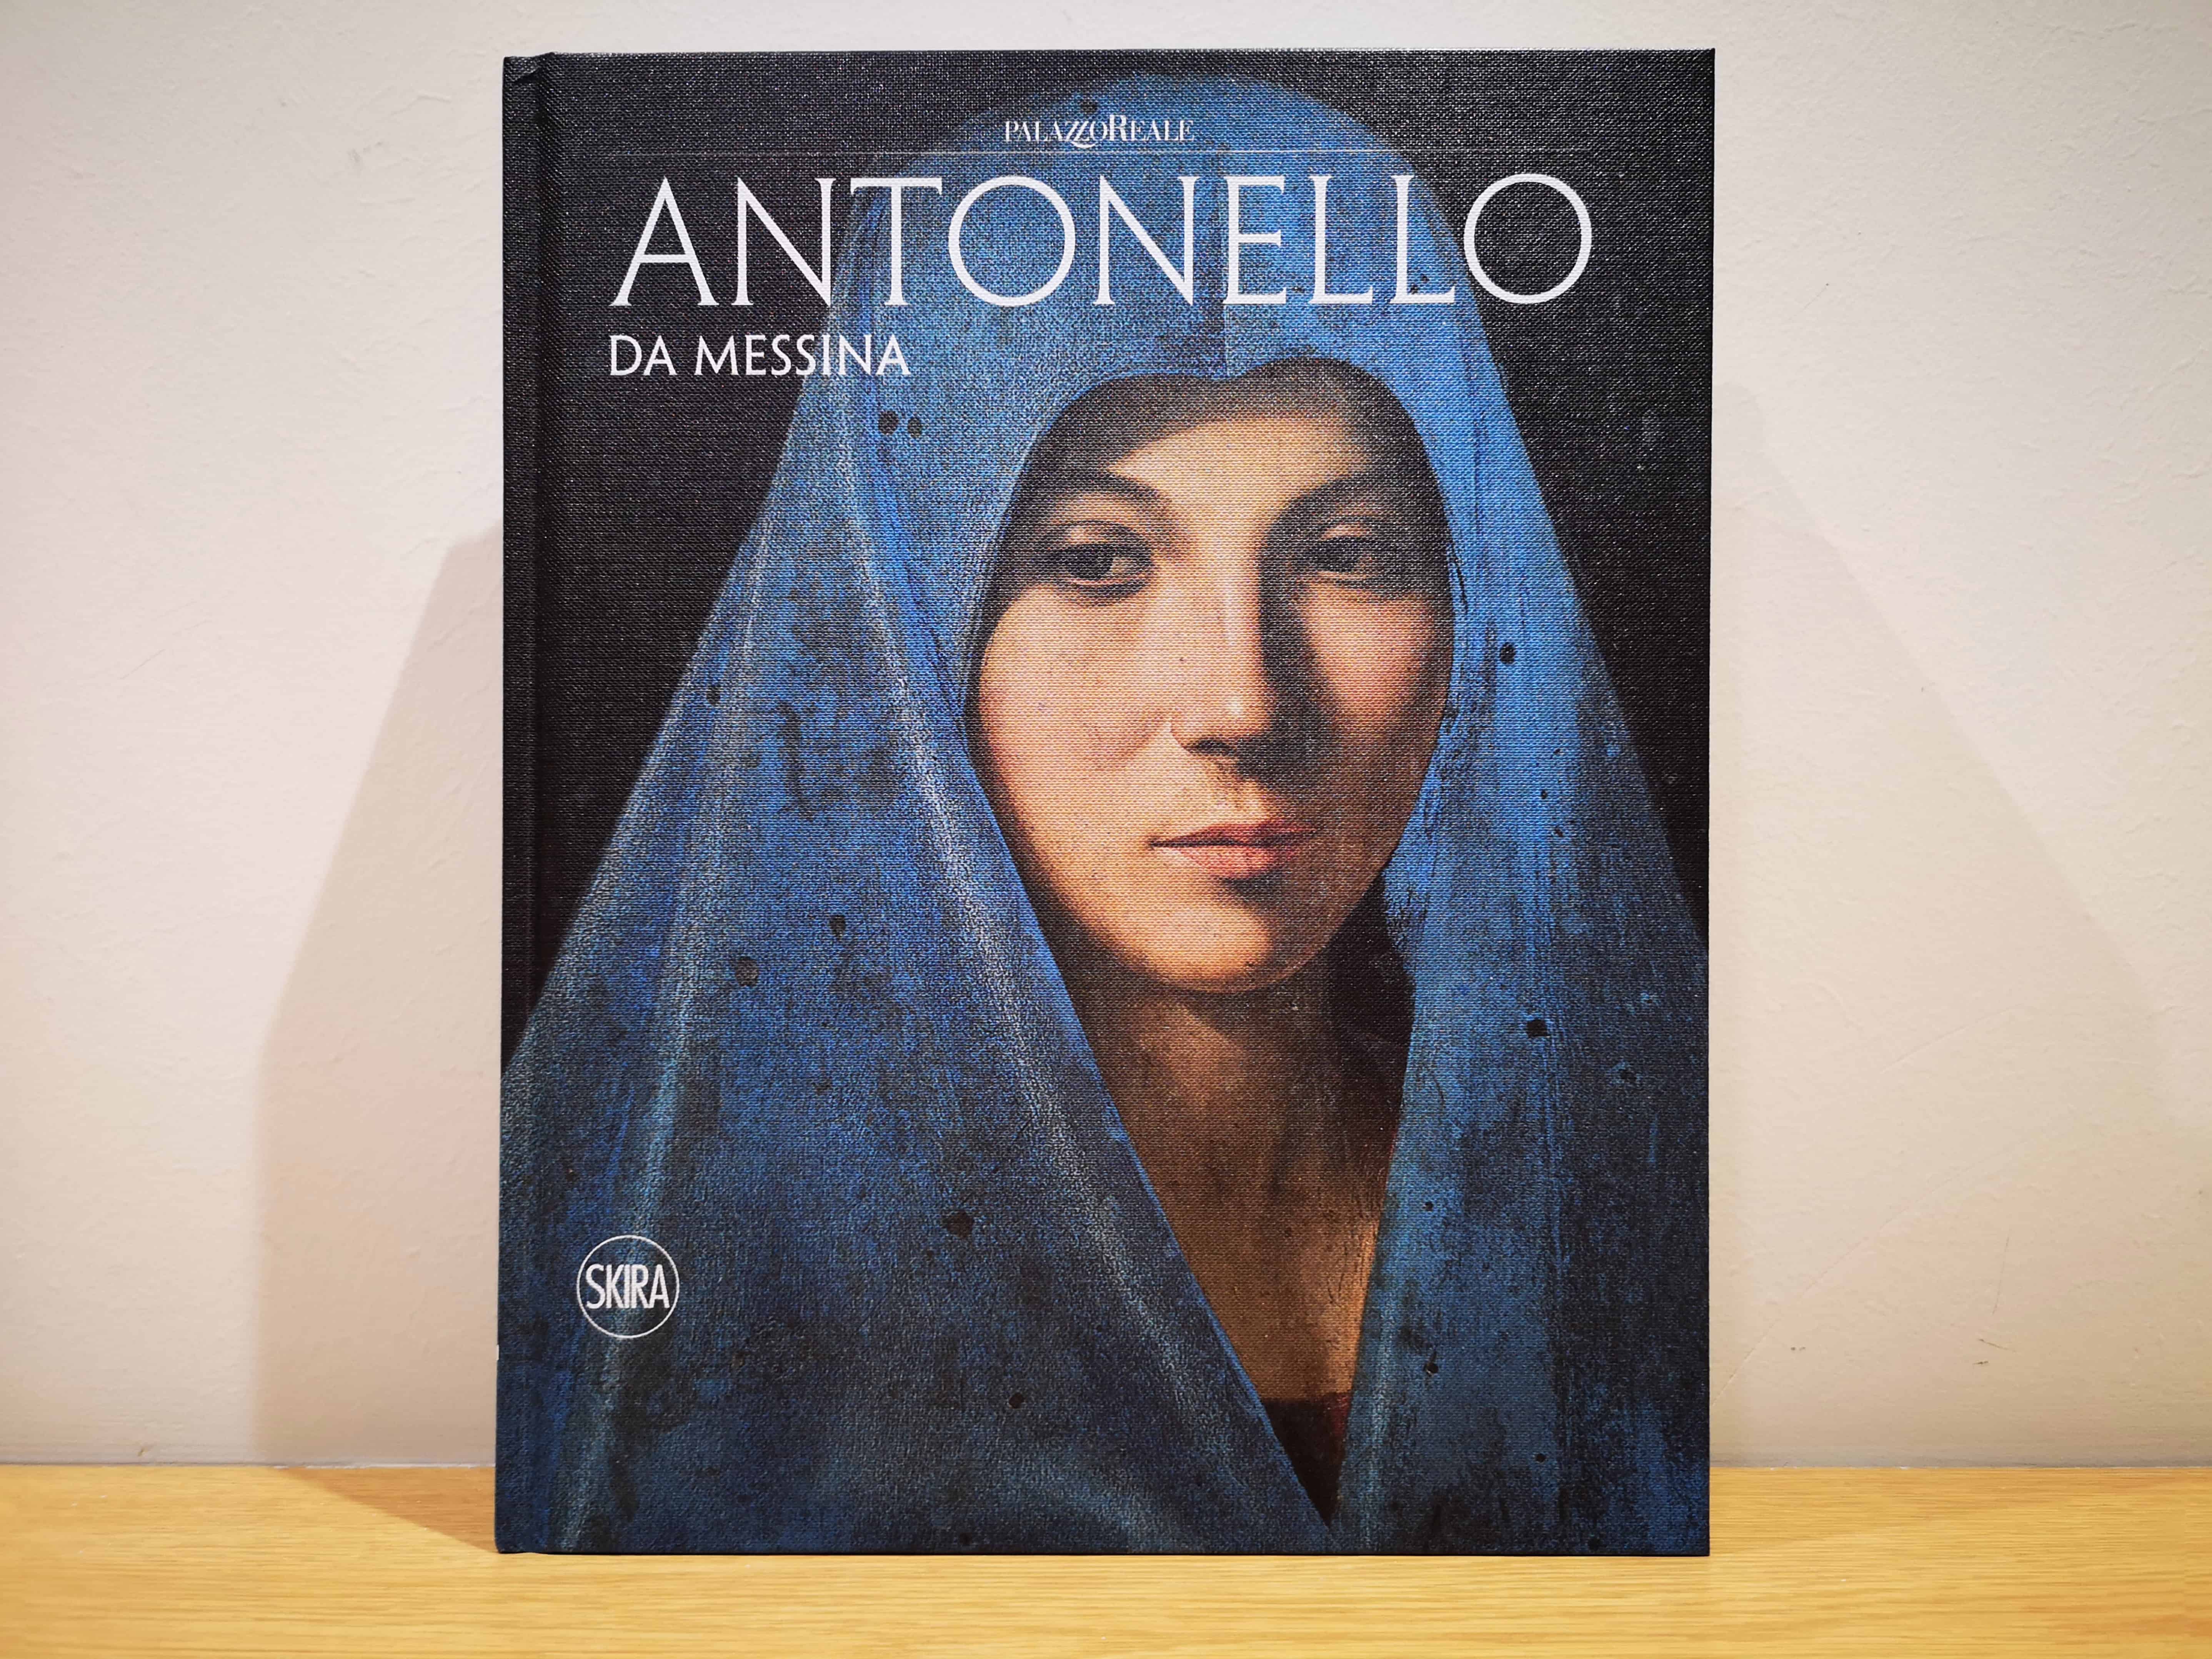 Antonello da Messina, Catalogo della mostra a Palazzo Reale, Skira